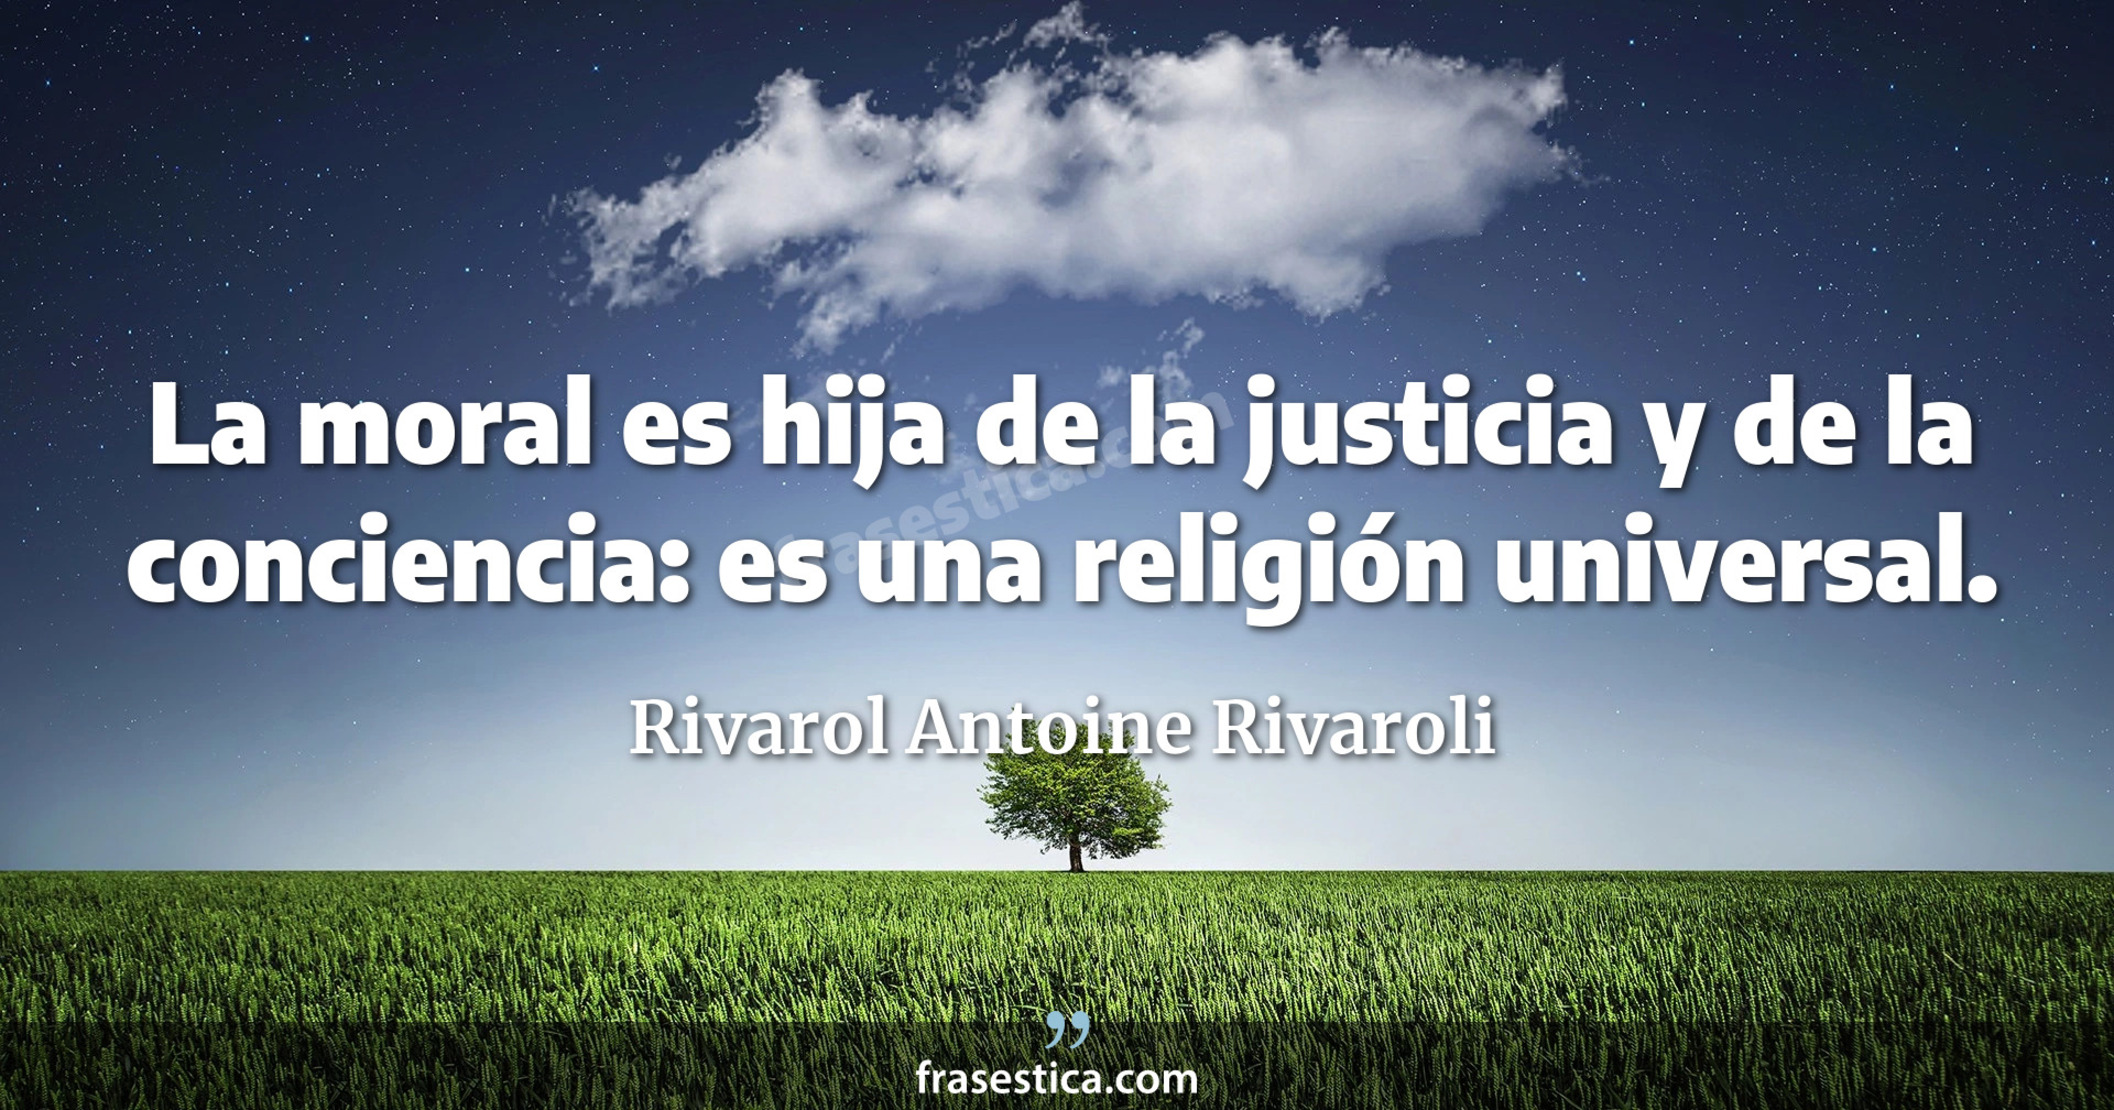 La moral es hija de la justicia y de la conciencia: es una religión universal. - Rivarol Antoine Rivaroli